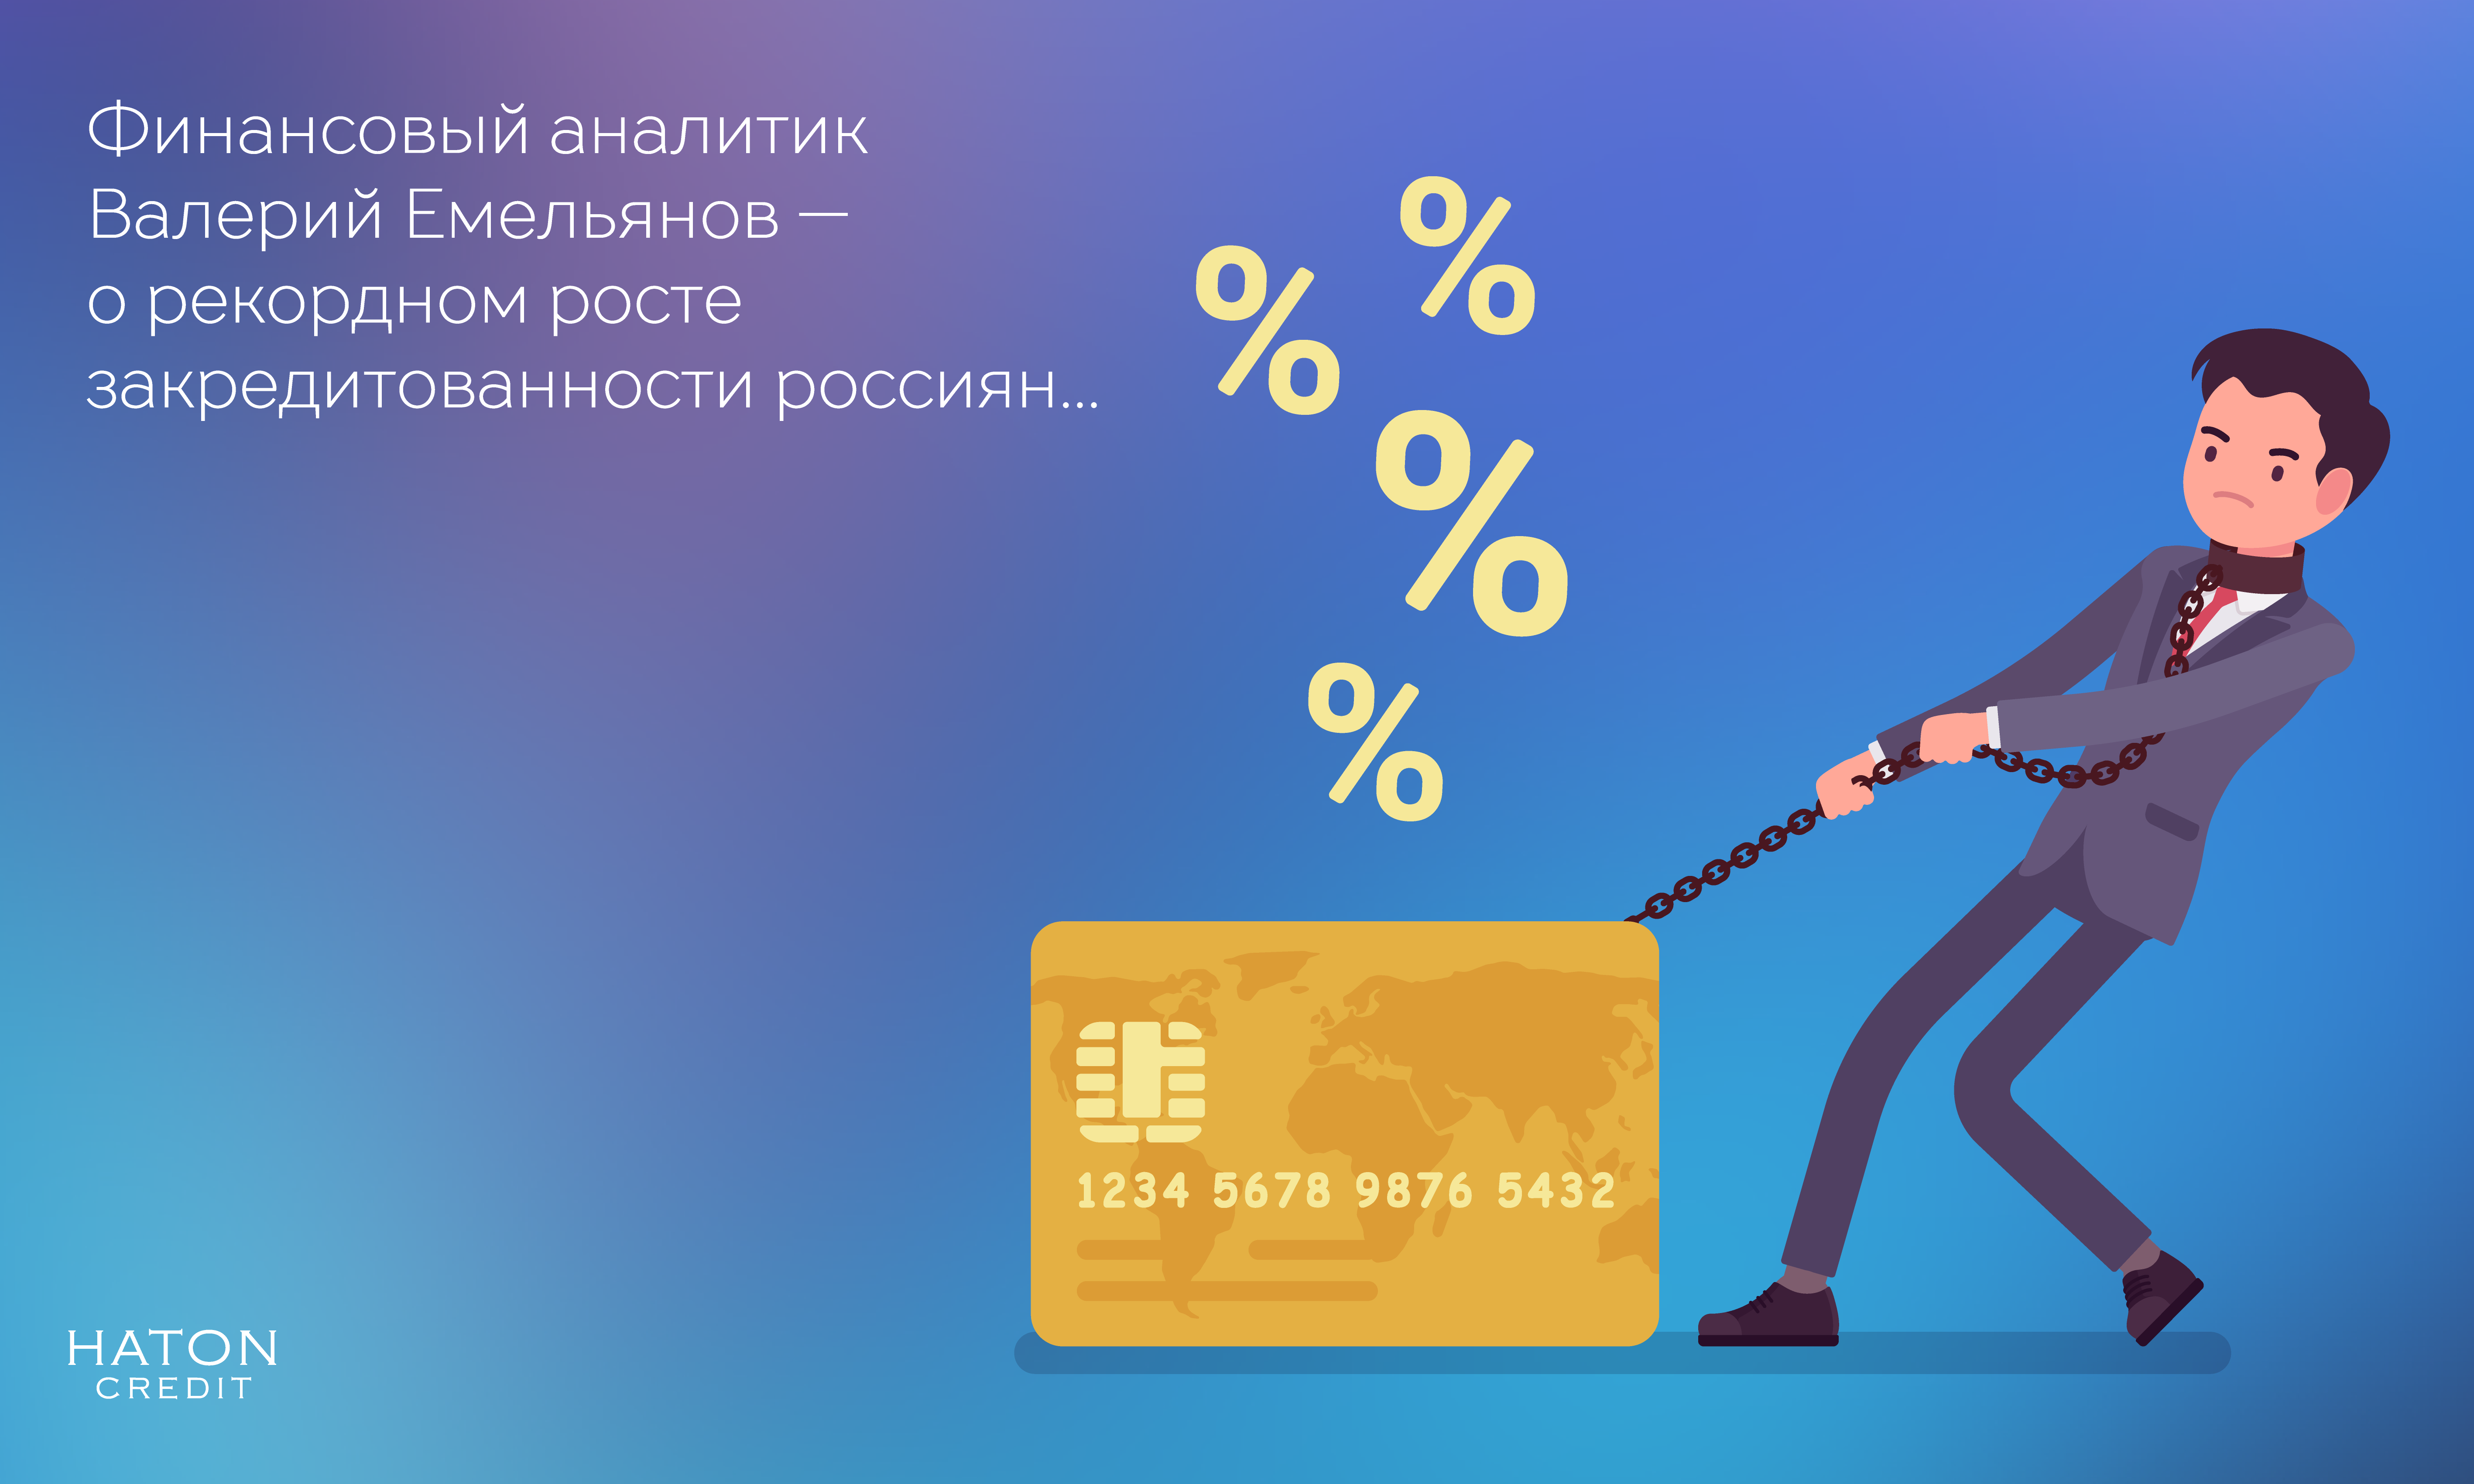 Финансовый аналитик Валерий Емельянов — о рекордном росте закредитованности россиян